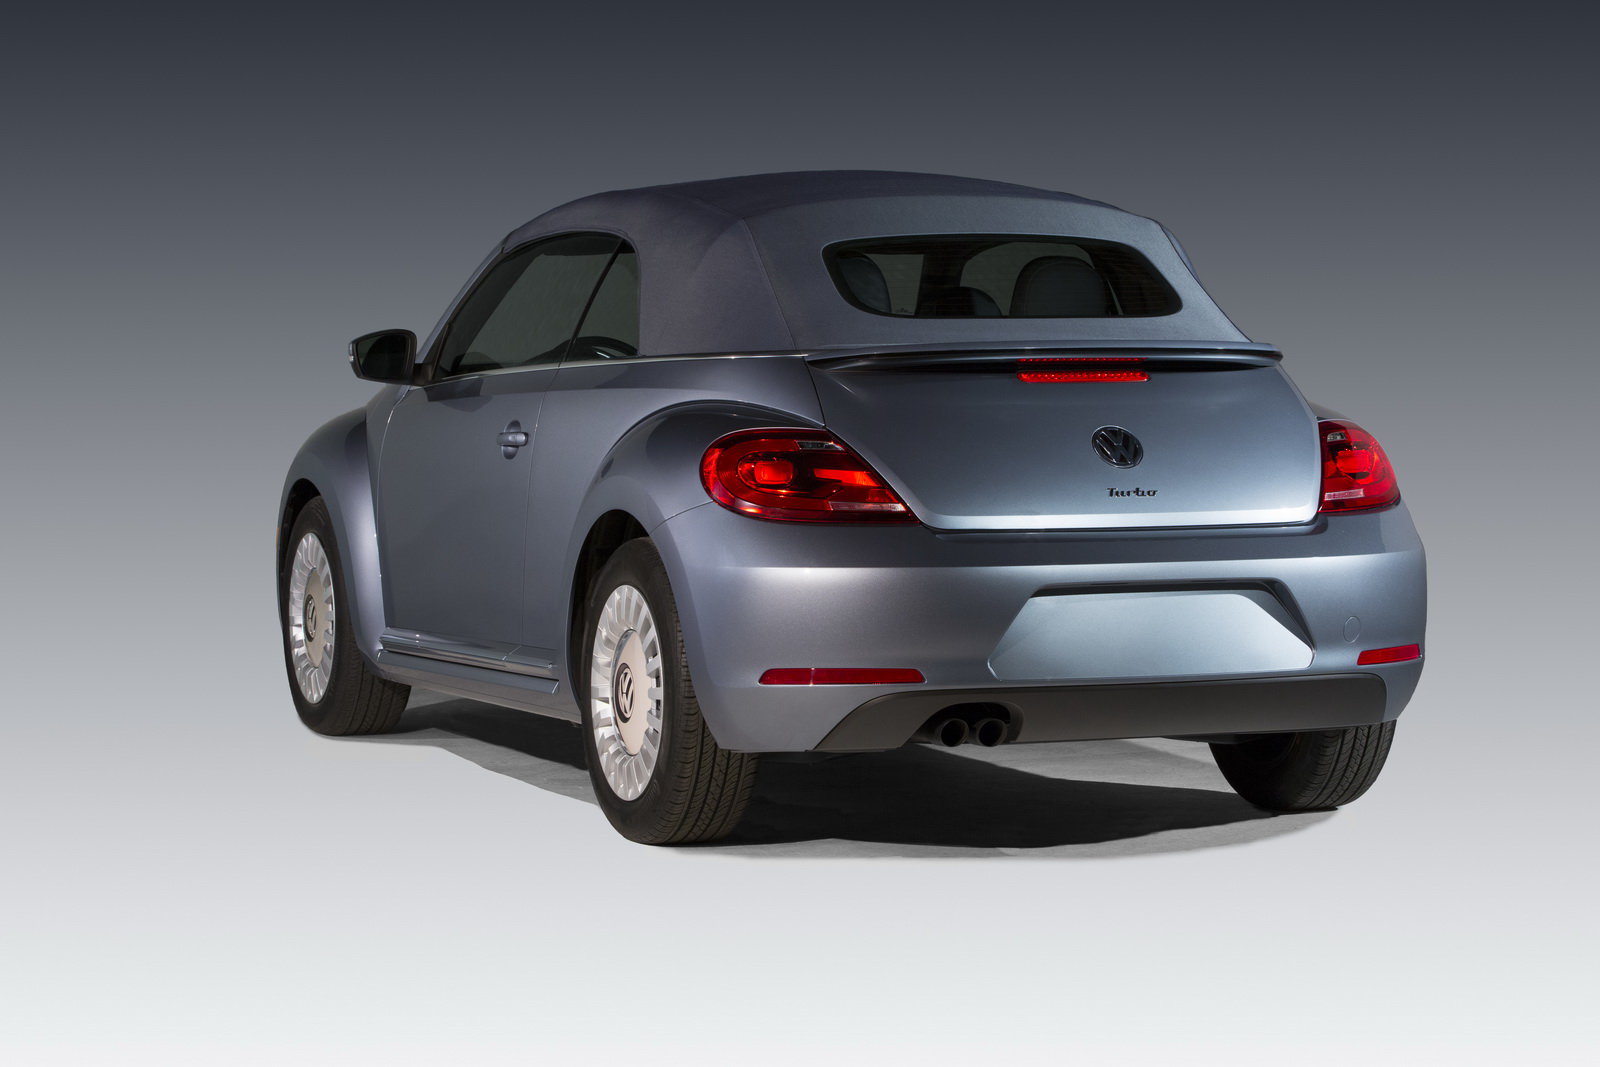 Modrý lak může být vyměněn za bílý, Volkswagen Beetle Denim.